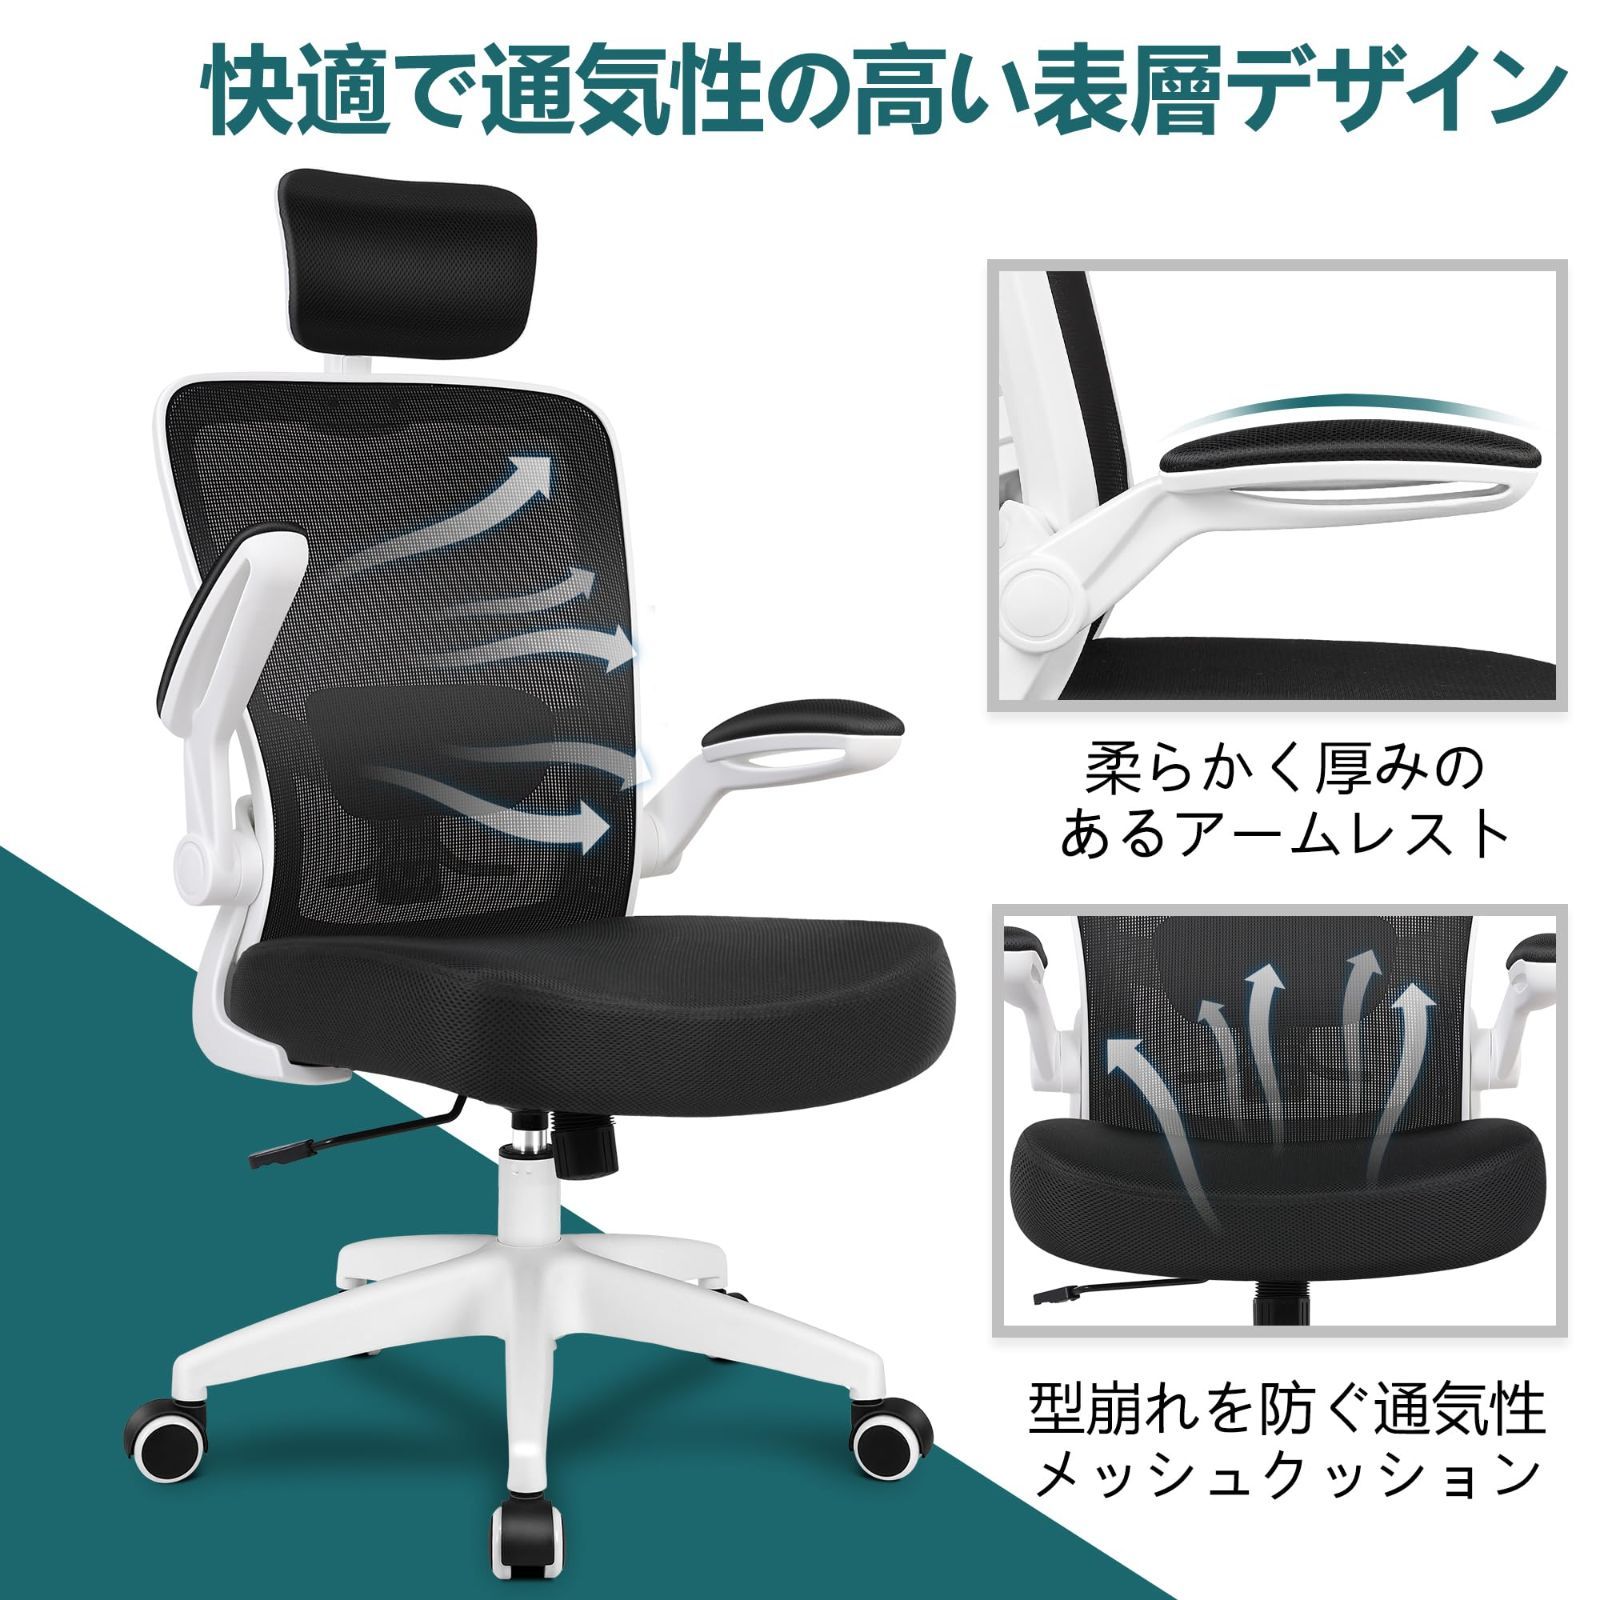 オフィスチェア デスクチェア 椅子 テレワーク 疲れない ハイバック 座面昇降高密度厚めのクッション